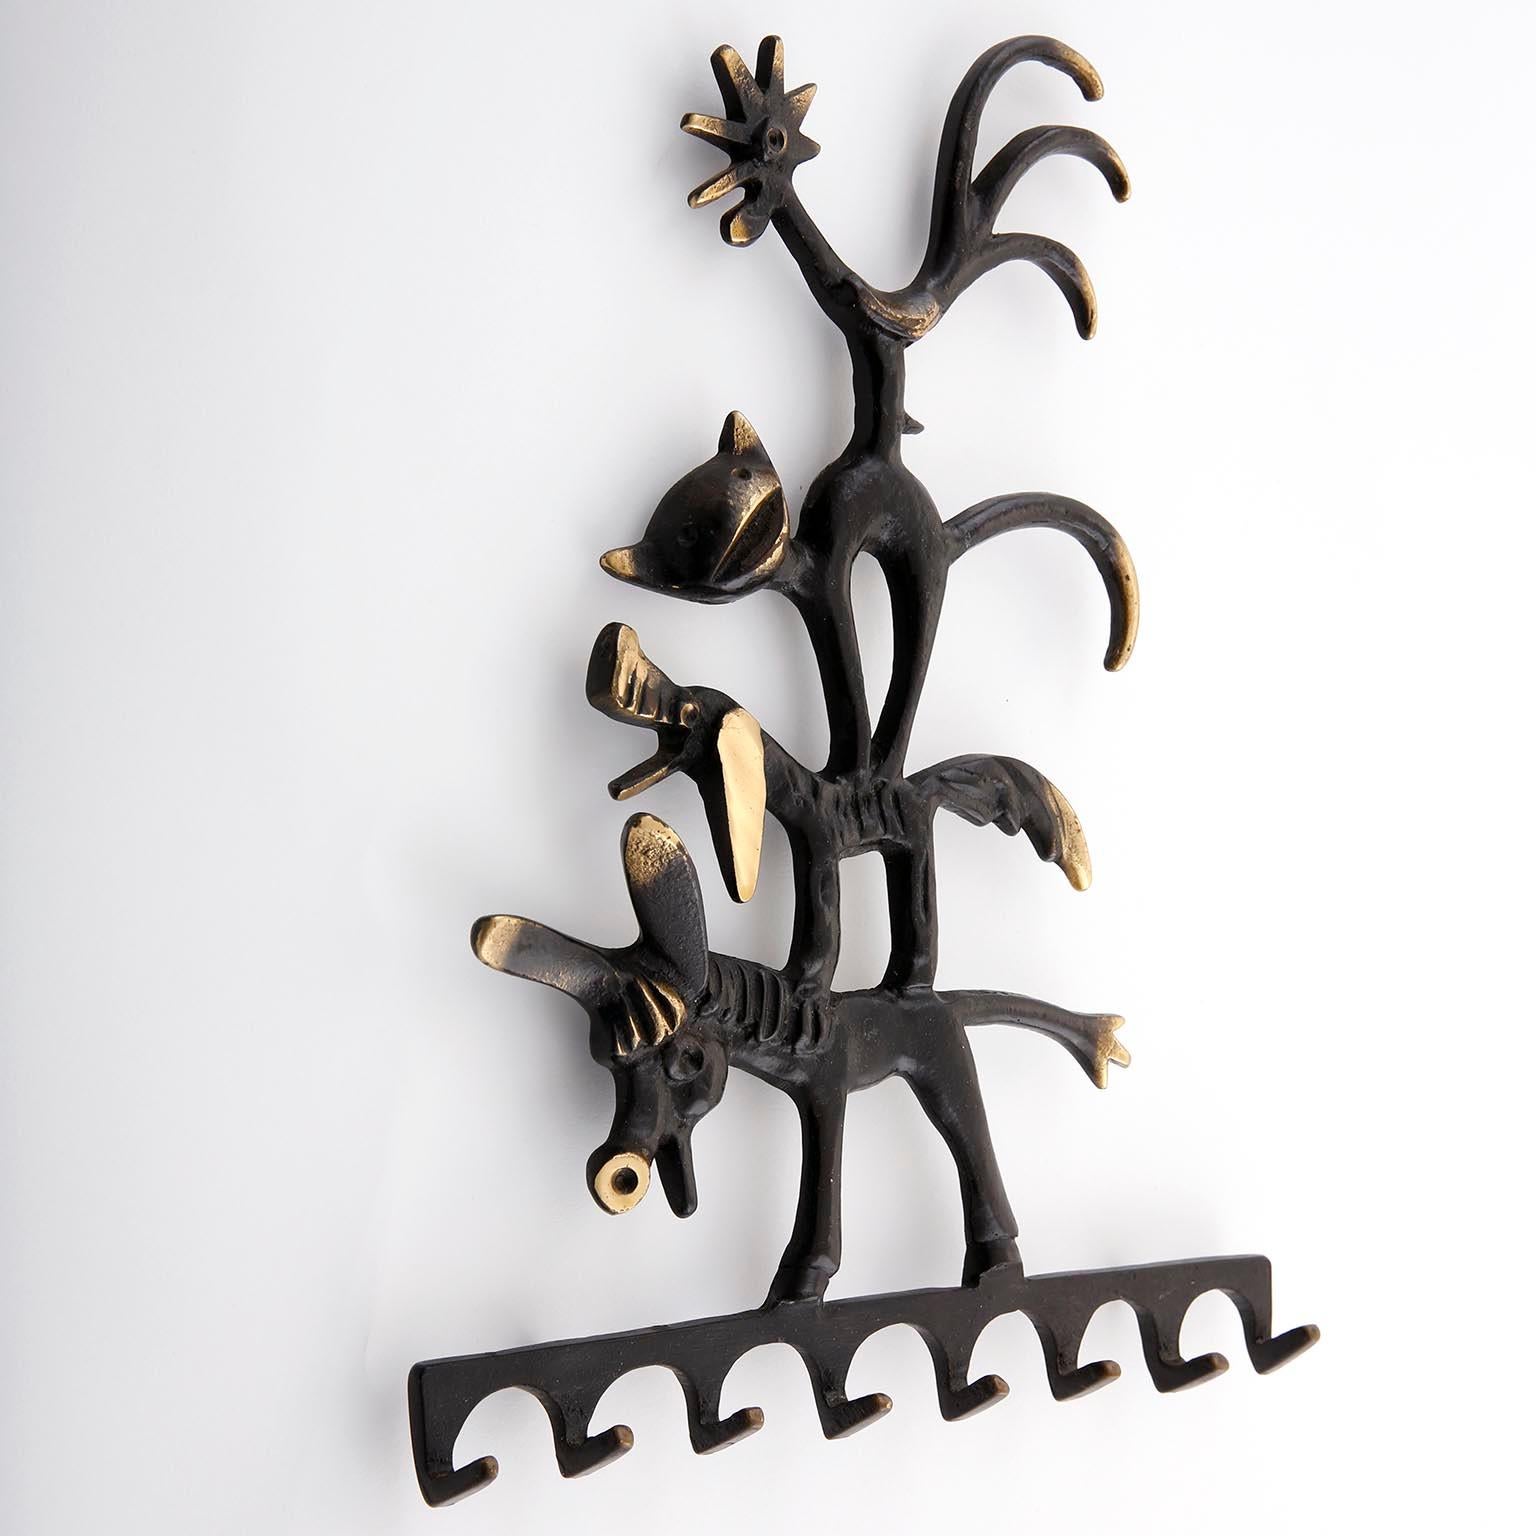 Ein Schlüsselanhänger aus geschwärztem und poliertem Messing von Walter Bosse, hergestellt von Hertha Baller, Österreich, Wien, Mitte der 1950er Jahre.
Dieser Schlüsselanhänger wurde von der deutschen Sage 